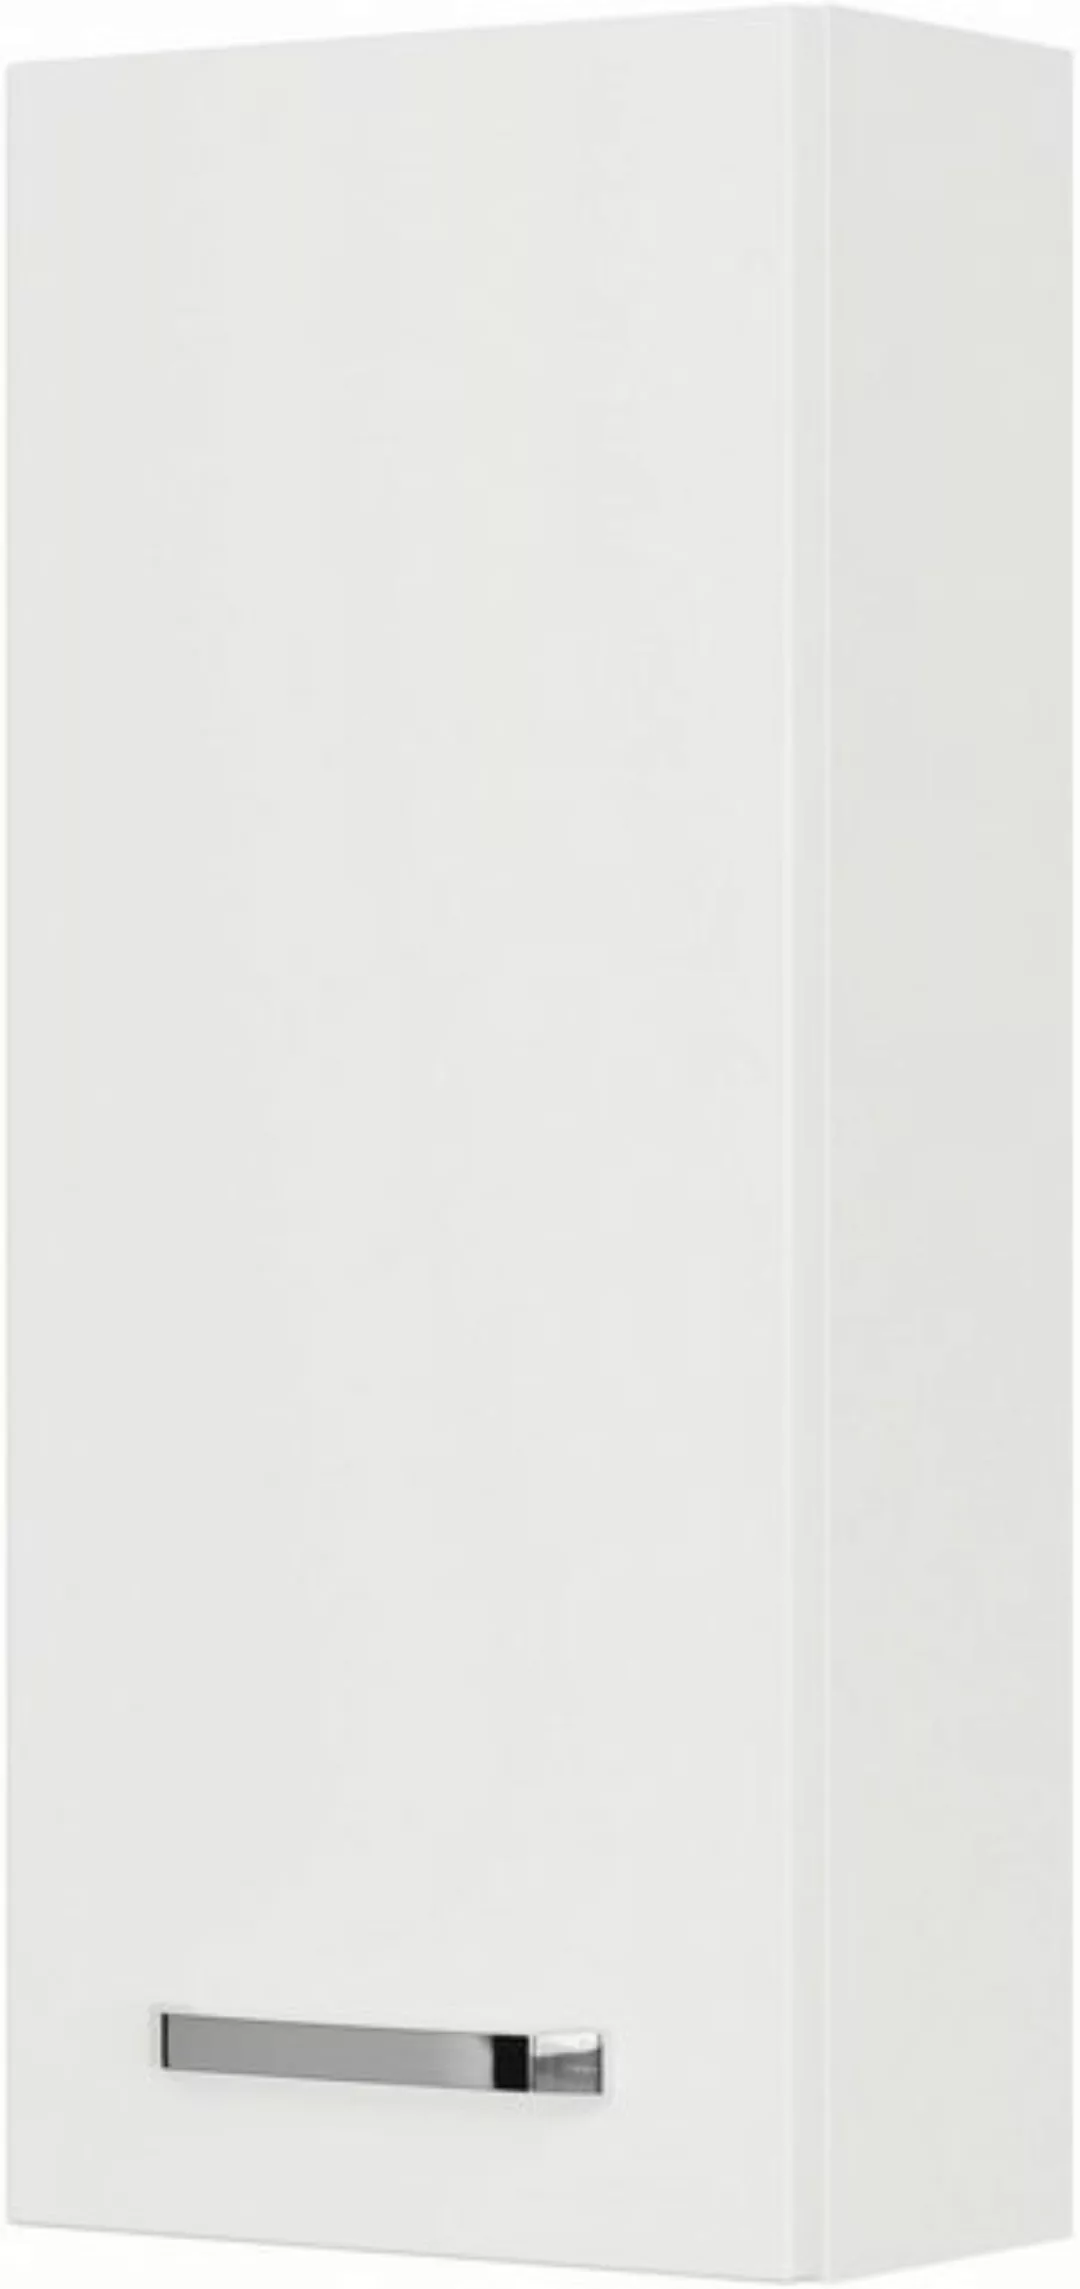 Saphir Hängeschrank Serie 4010 Wand-Badschrank 30 cm breit mit 1 Tür, 2 Gla günstig online kaufen